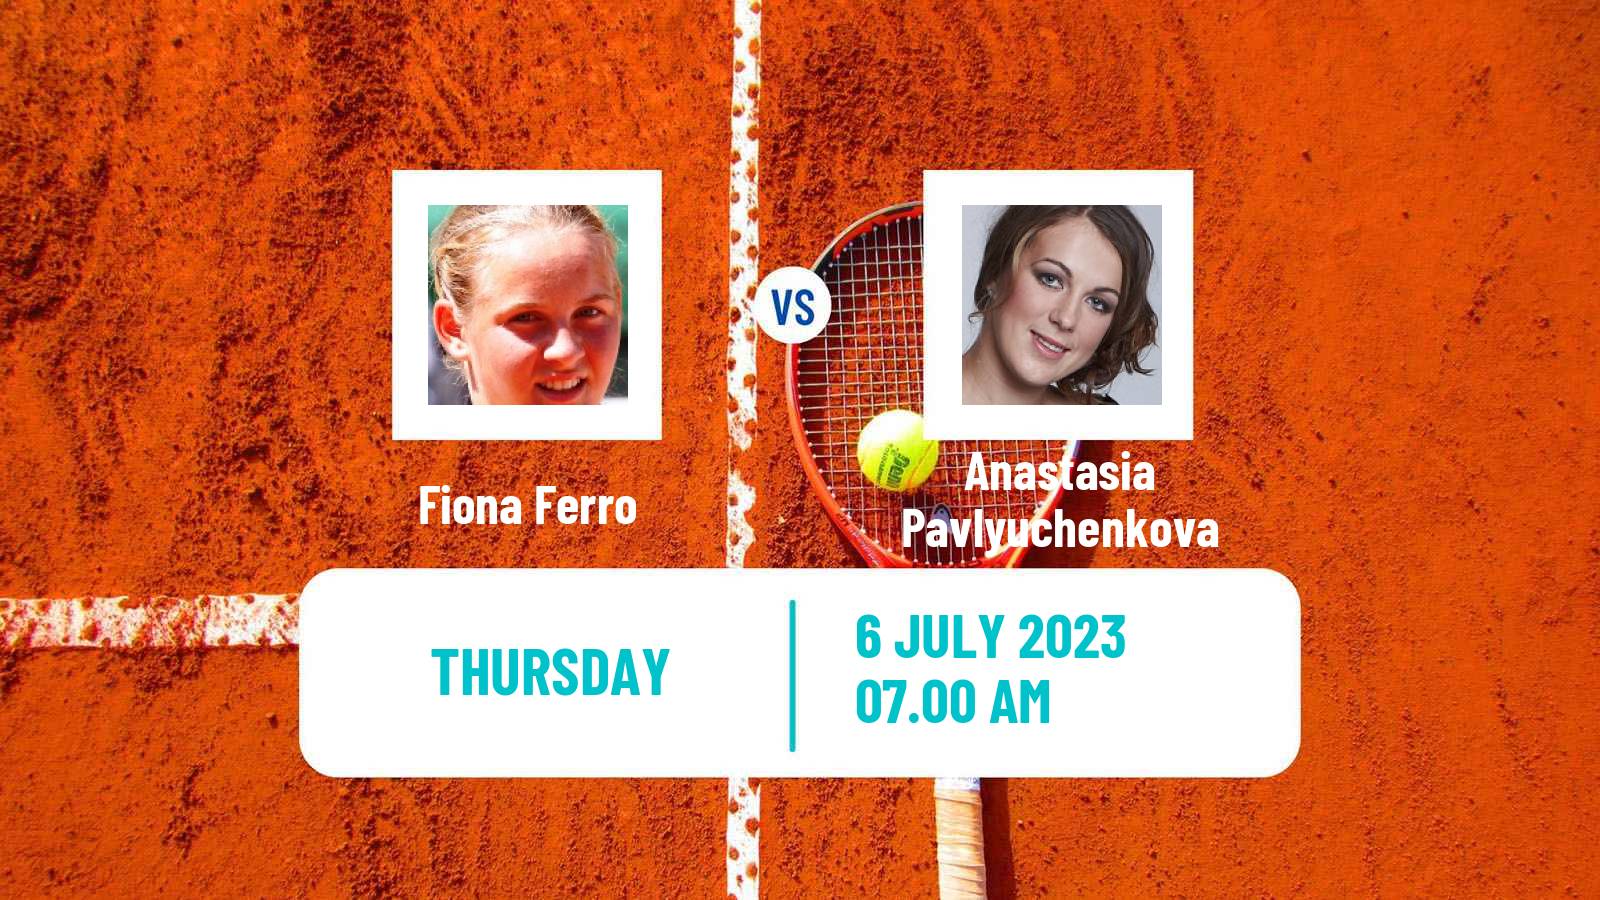 Tennis ITF W60 Montpellier Women Fiona Ferro - Anastasia Pavlyuchenkova